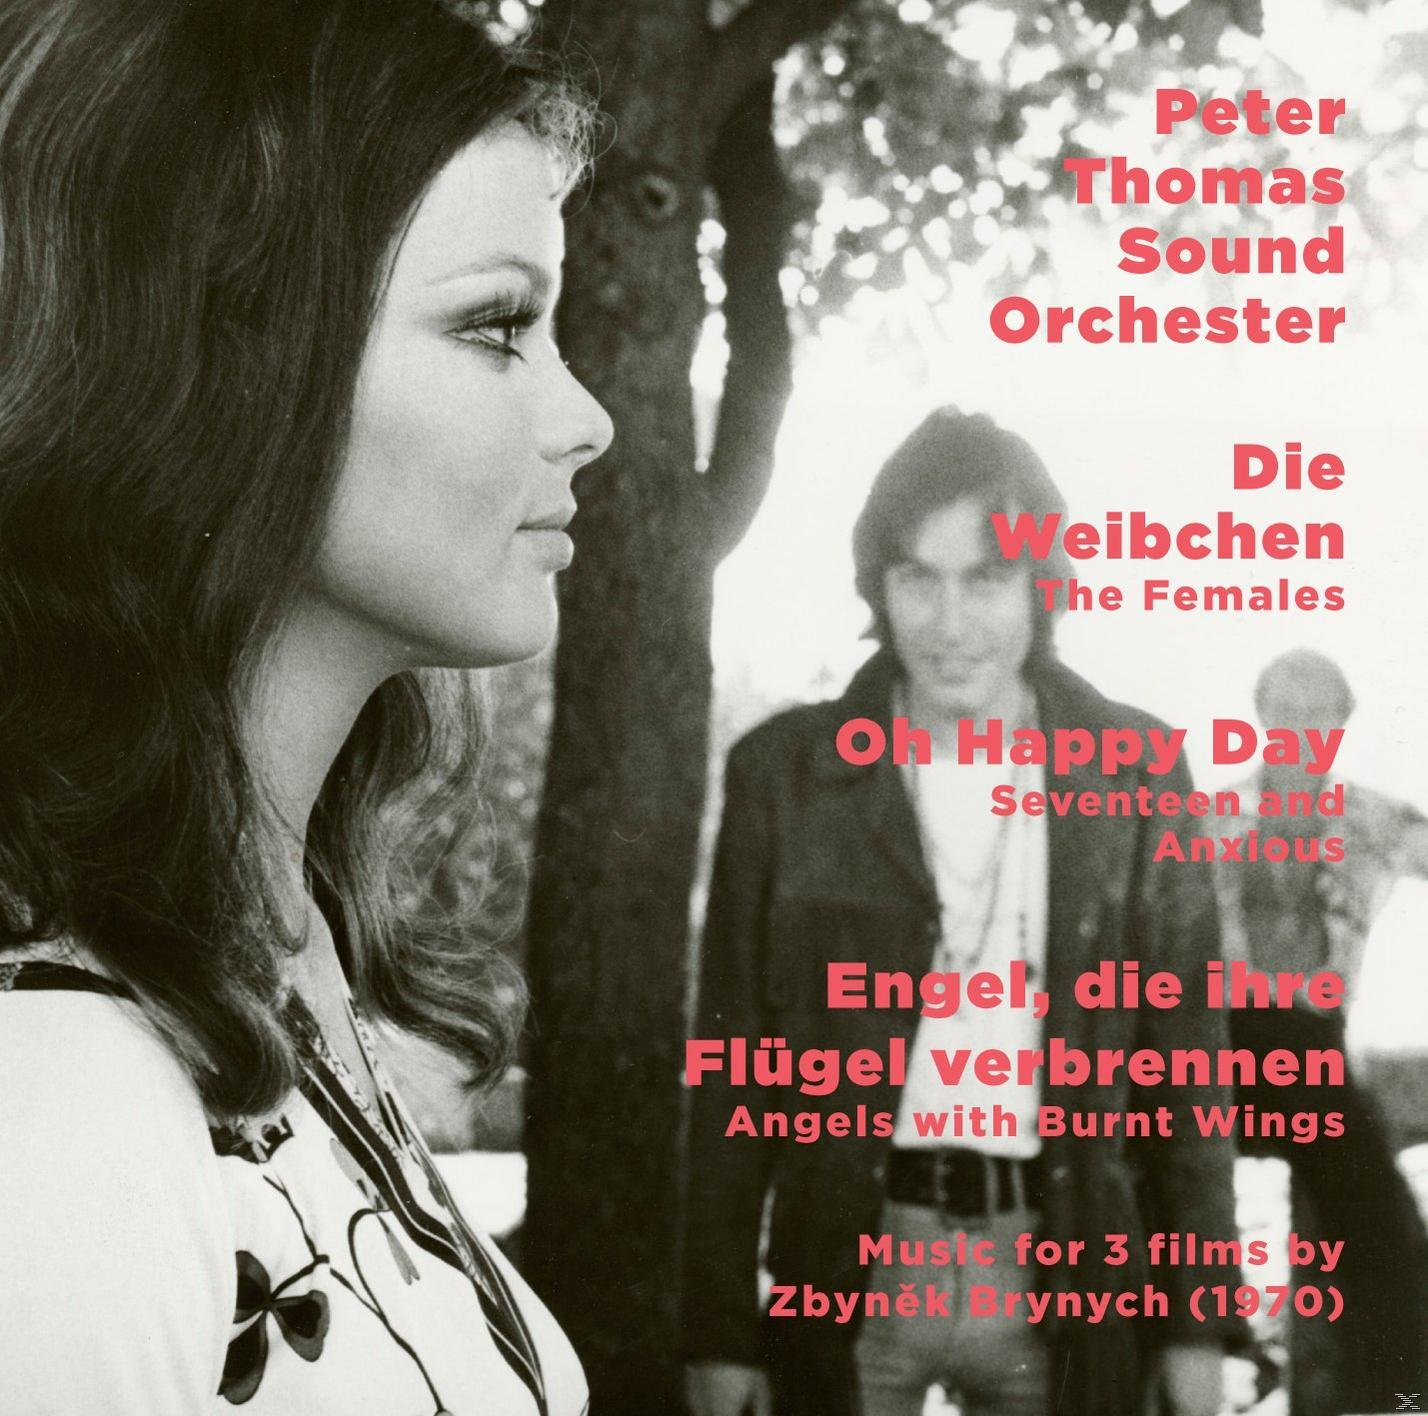 Peter Thomas Sound Flügel - Happy Die Weibchen/O (CD) - Orchester Day/Engel, Verbrennen Ihre Die